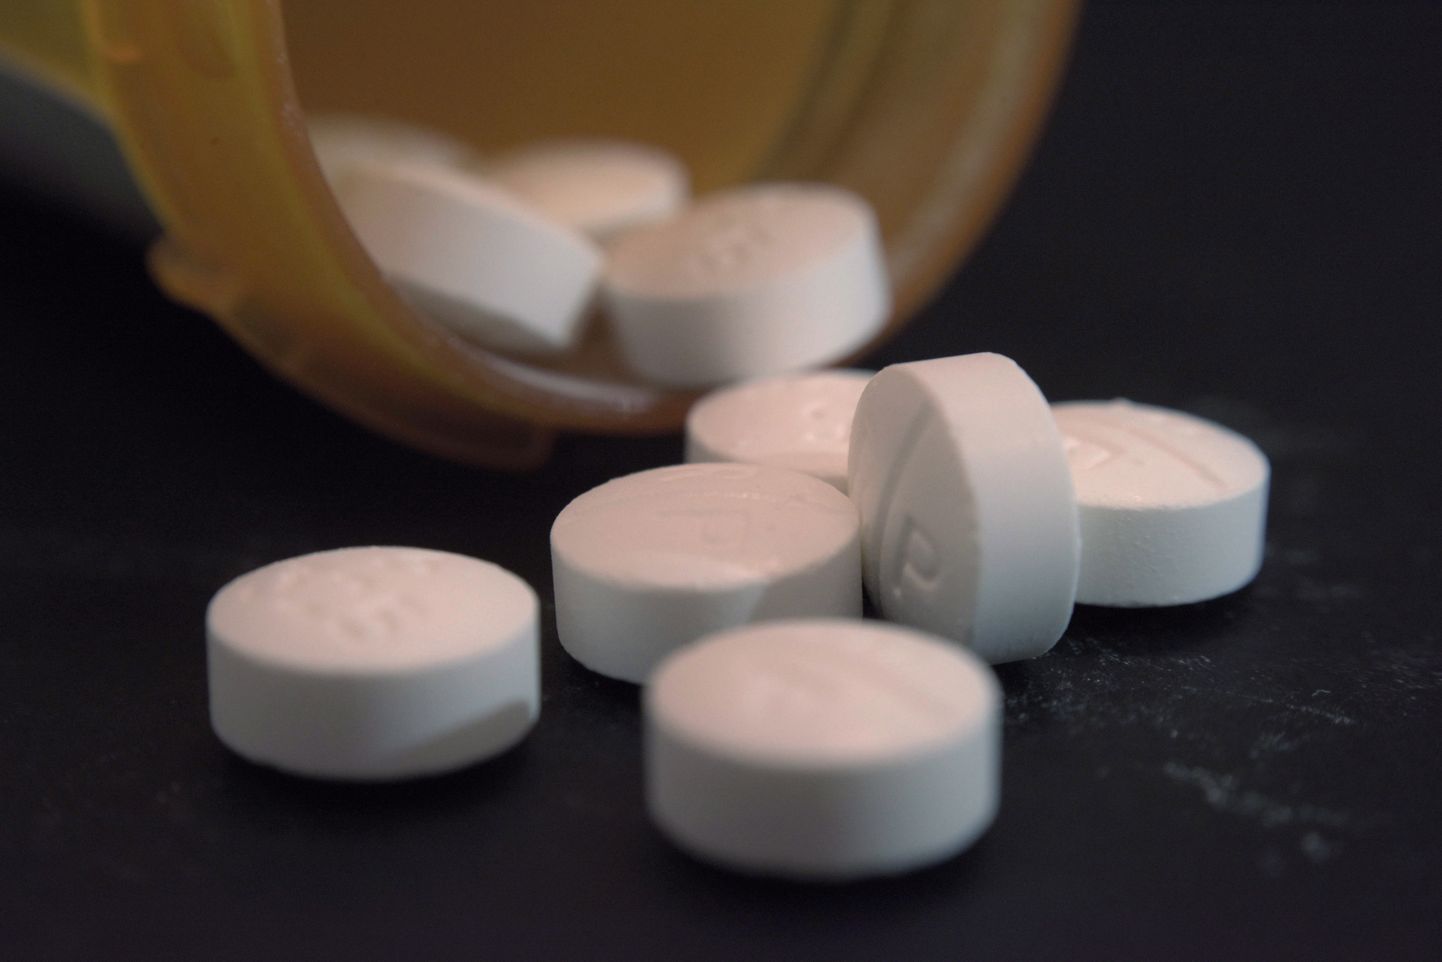 Масштабы злоупотребления опиодными препаратами вызывают особую тревогу, отмечают в ООН.